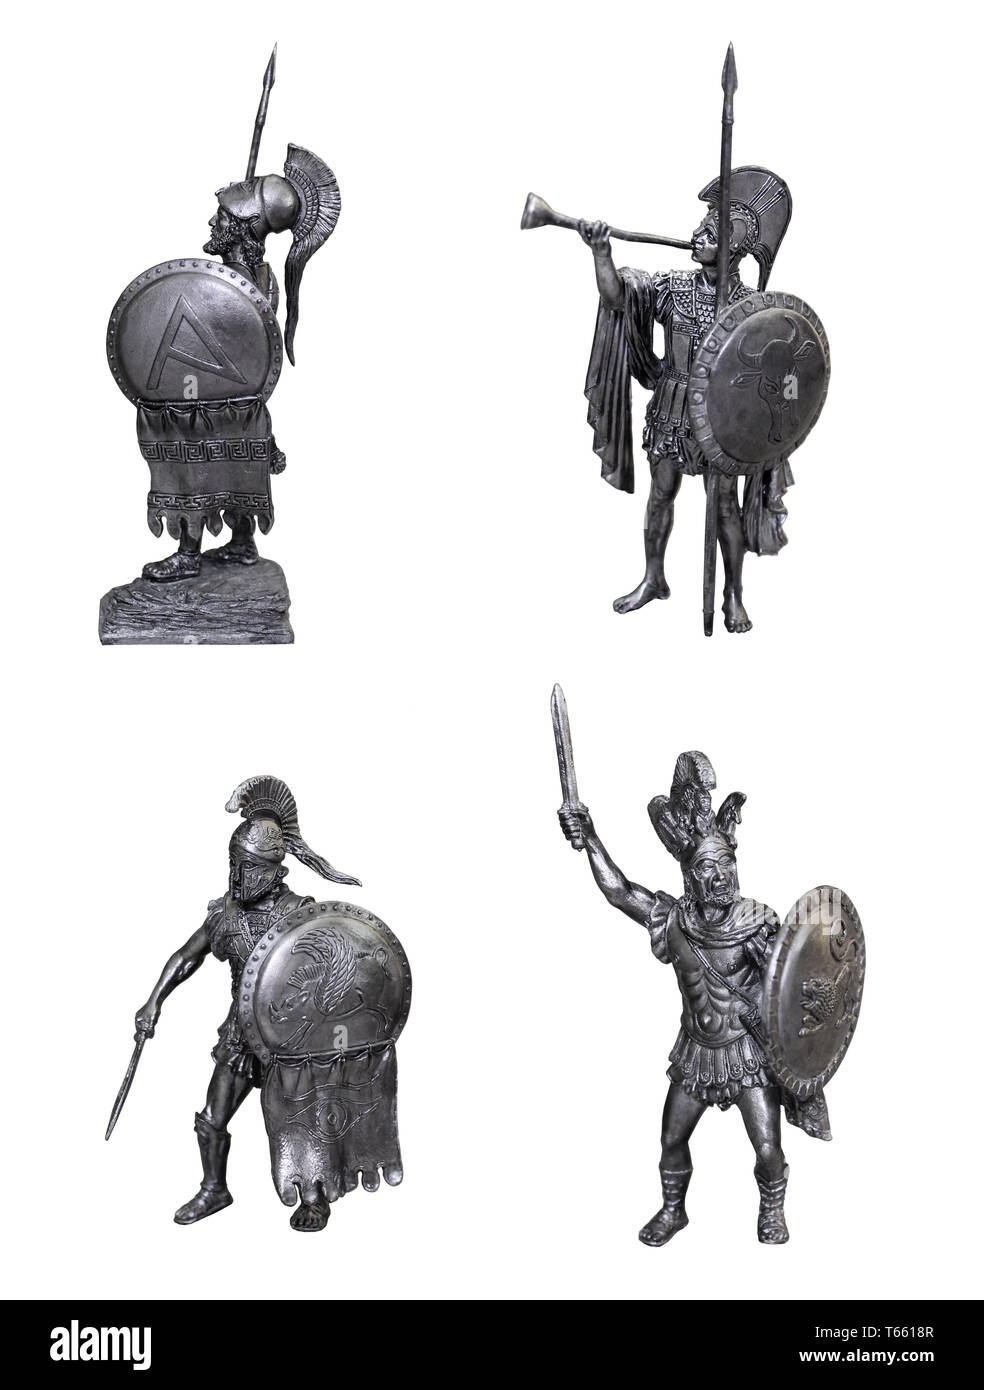 Hoplite grec illustration. Anciens guerriers. Illustration historique. Banque D'Images